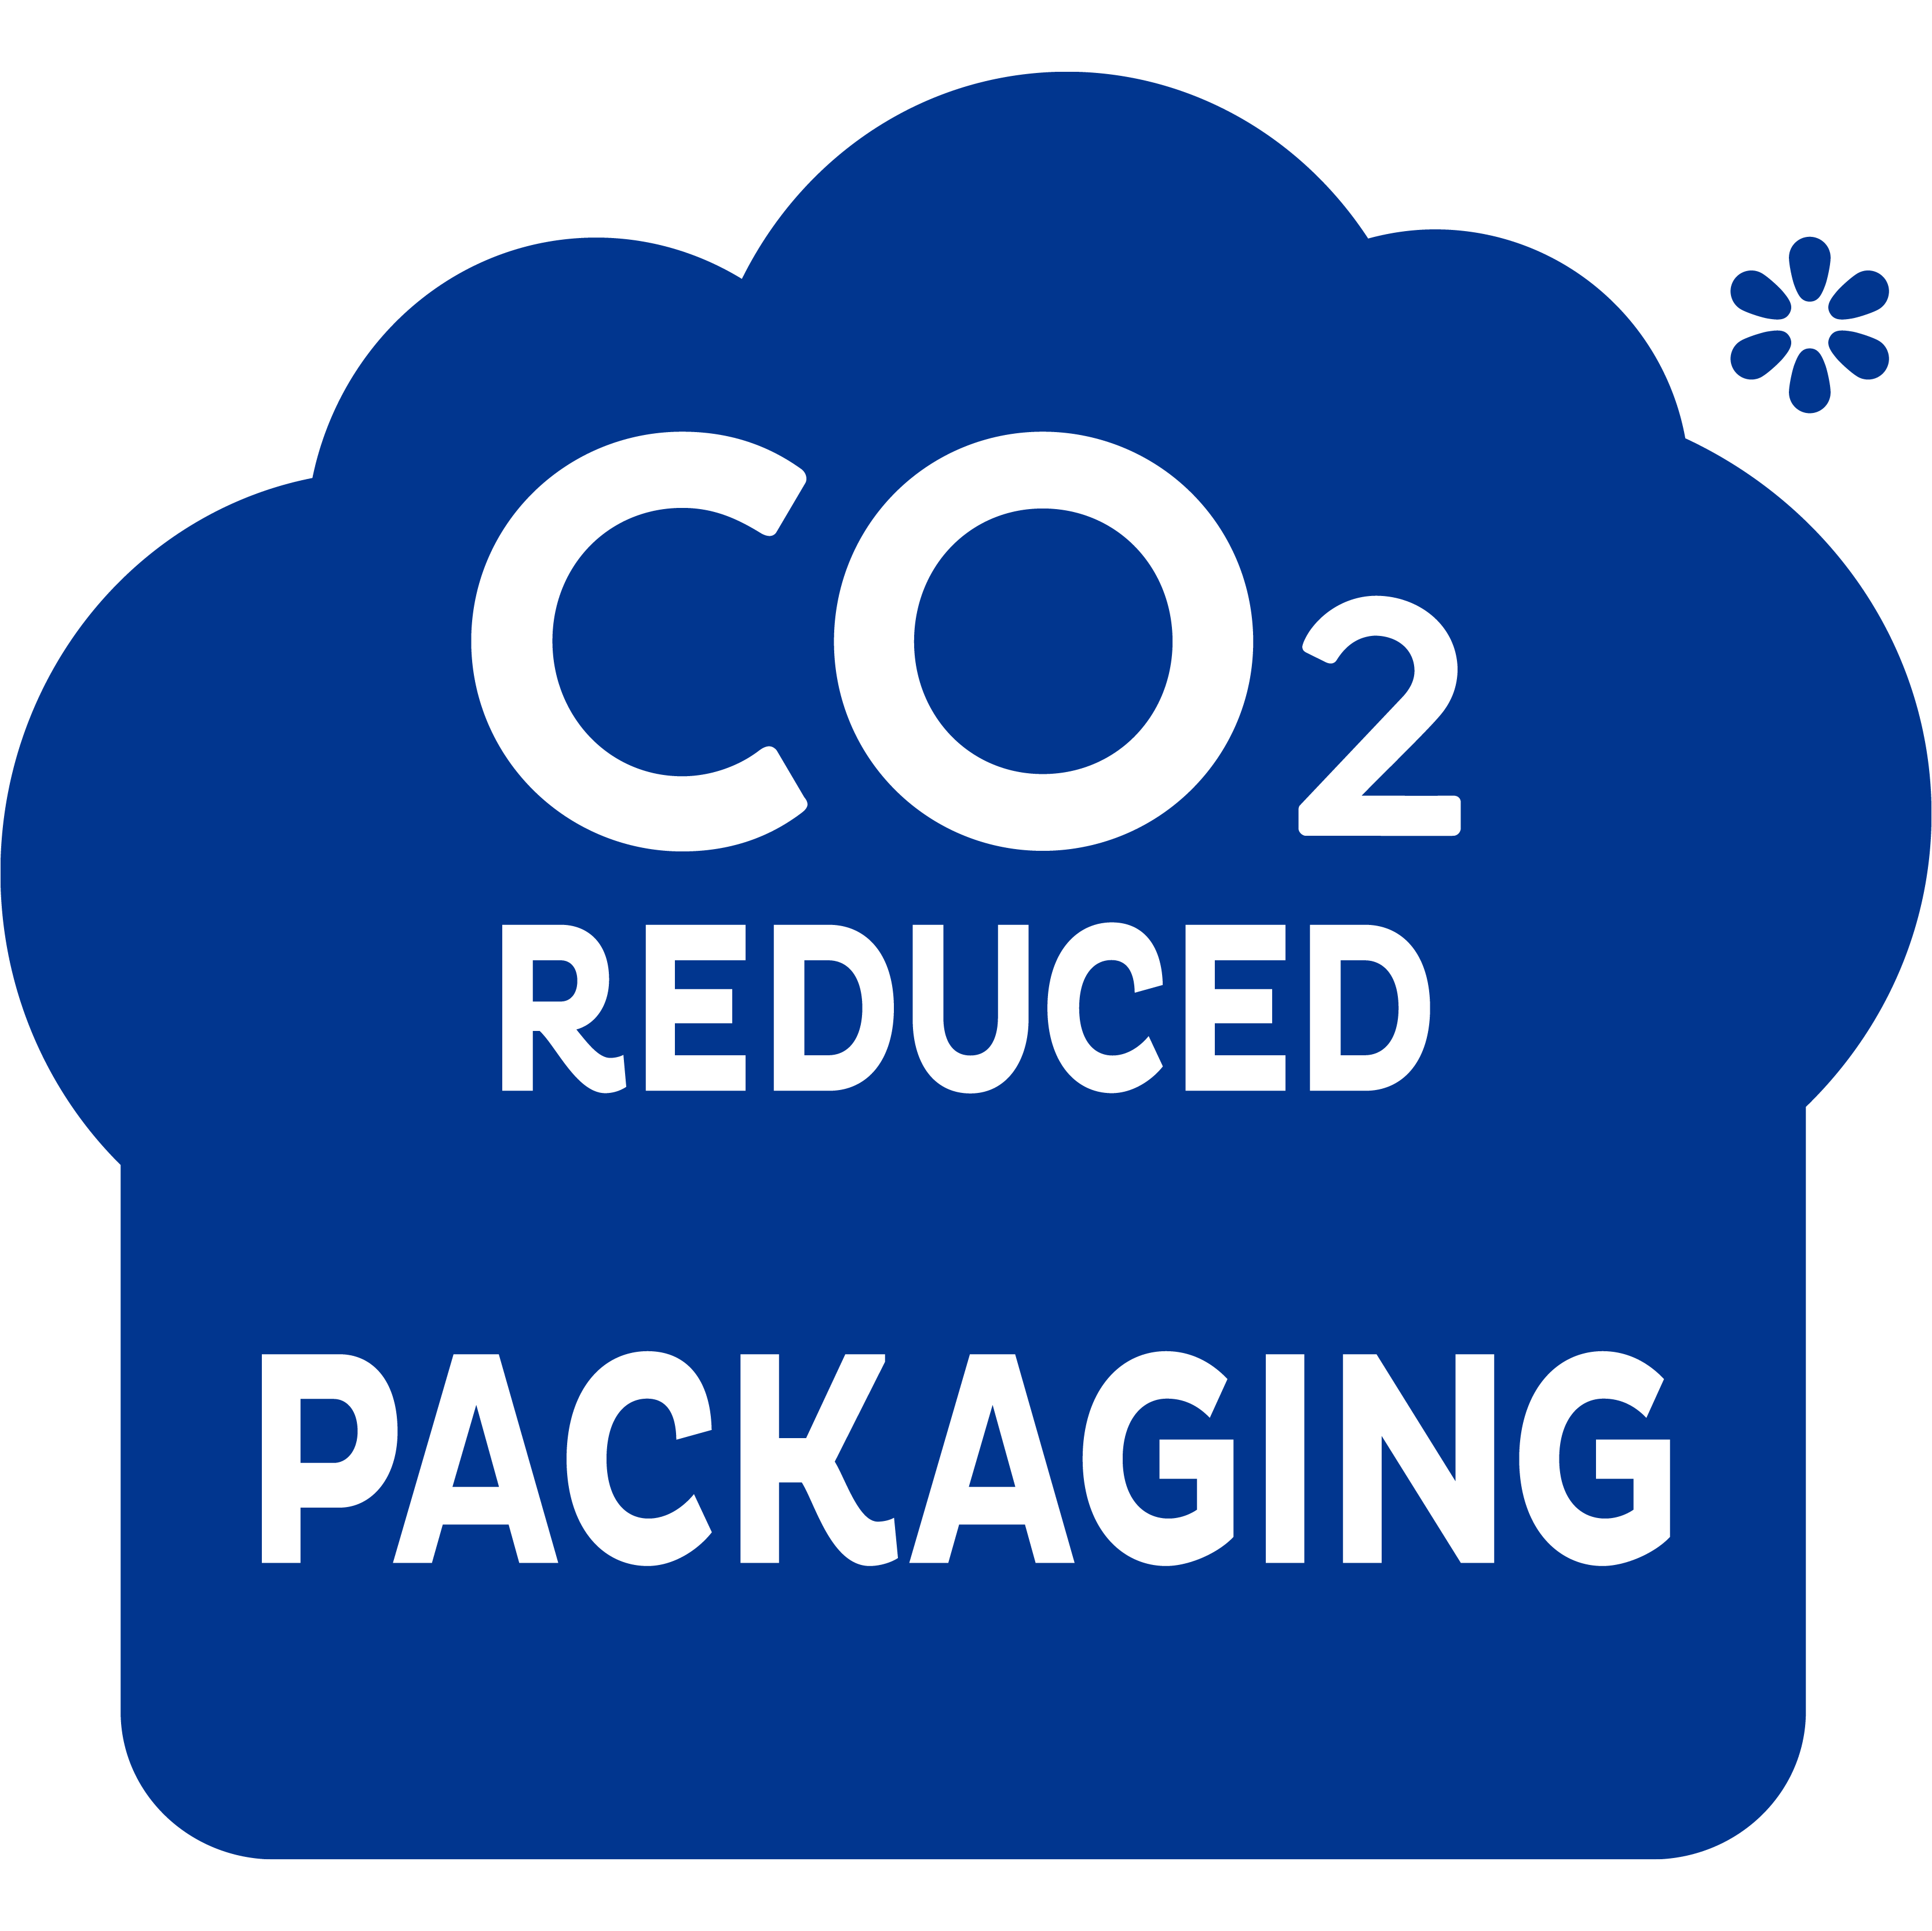 TENA Pants con imballaggio ecosostenibile (ridotte emissioni di CO2): un ulteriore passo avanti nella giusta direzione